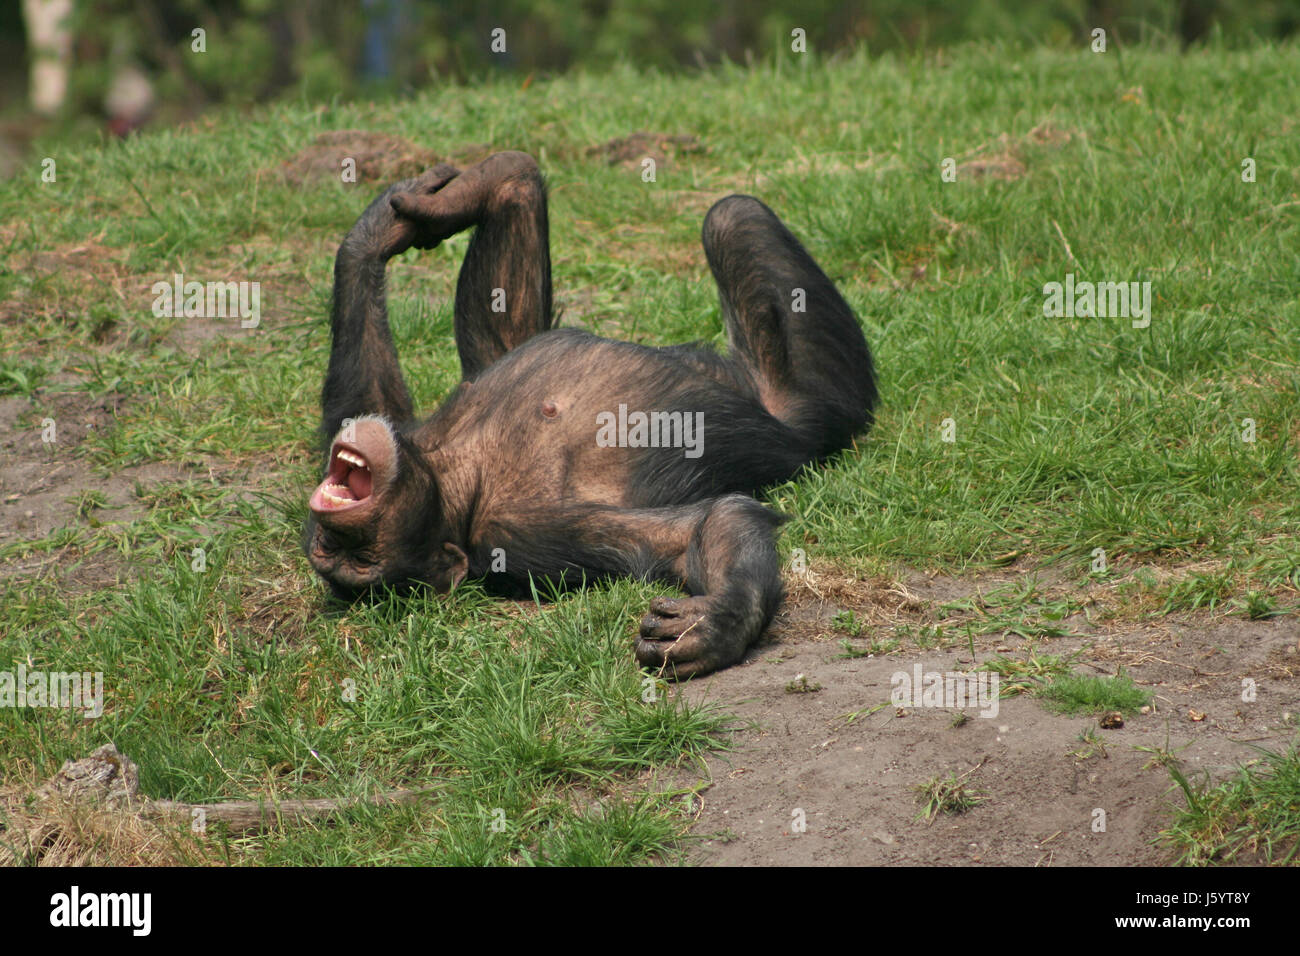 Animal Affe Haut tierisch Schimpansen Menschenaffen Tier wilde Affen Haare Haut Stockfoto